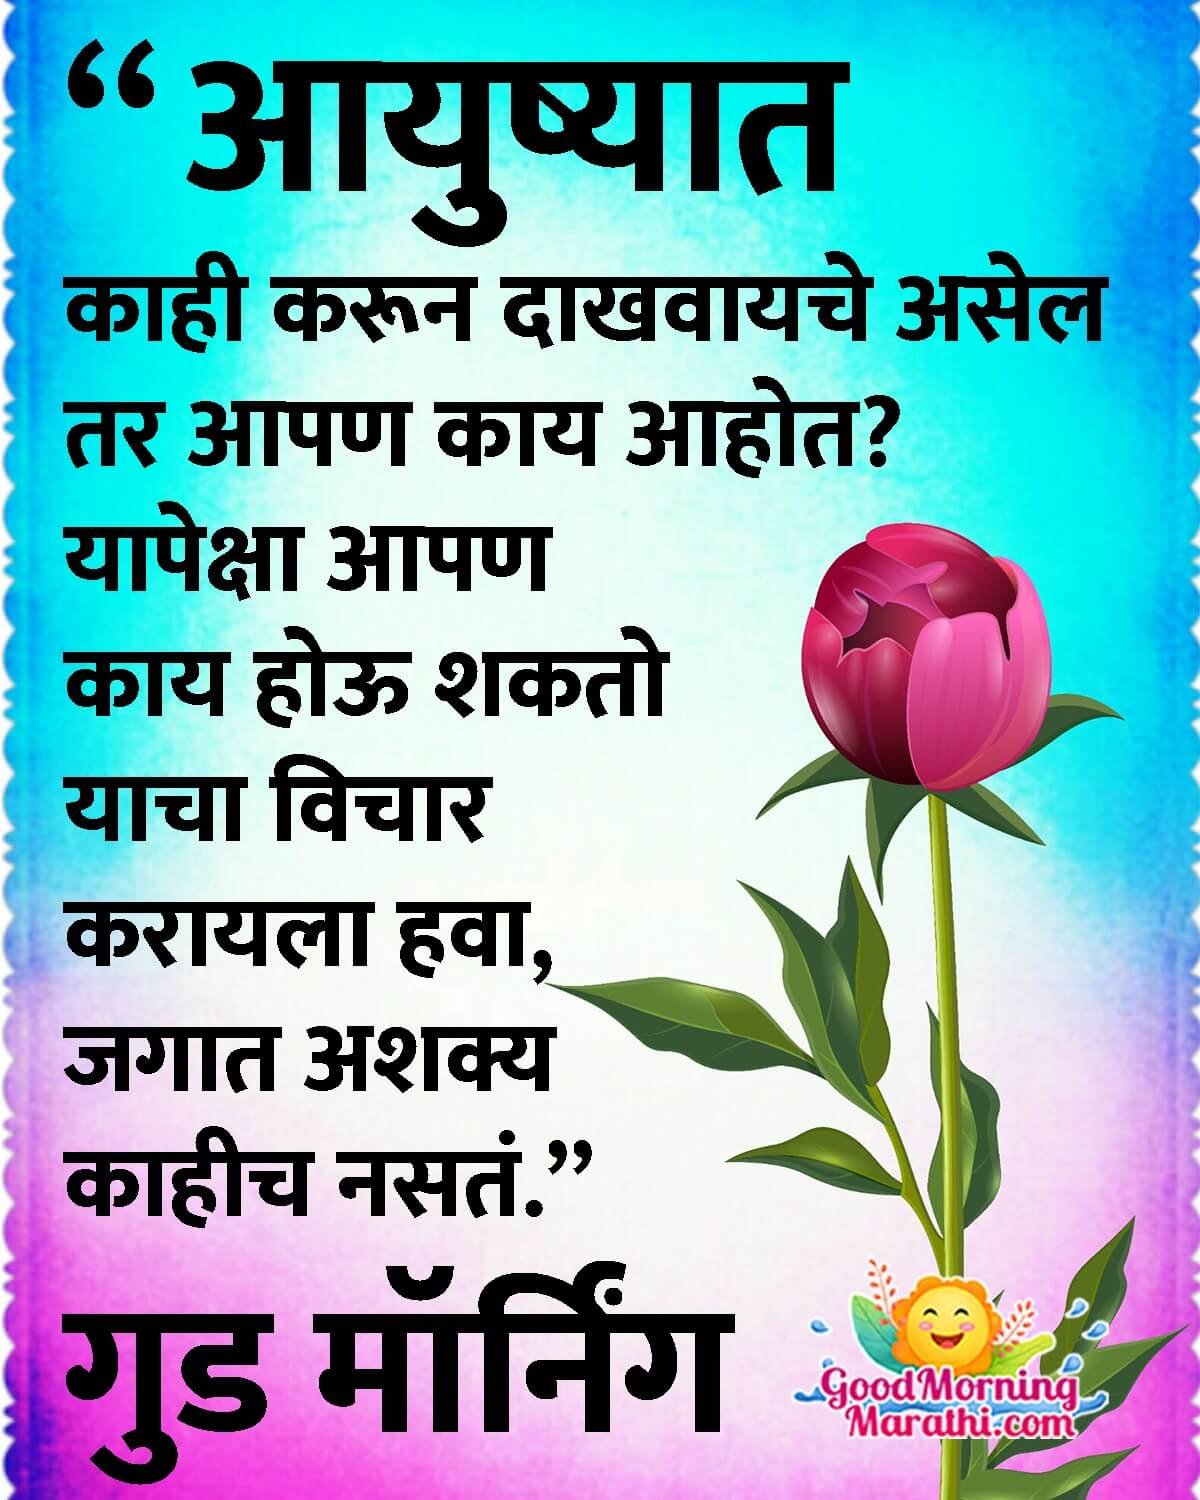 Good Morning Life Quote Marathi Image